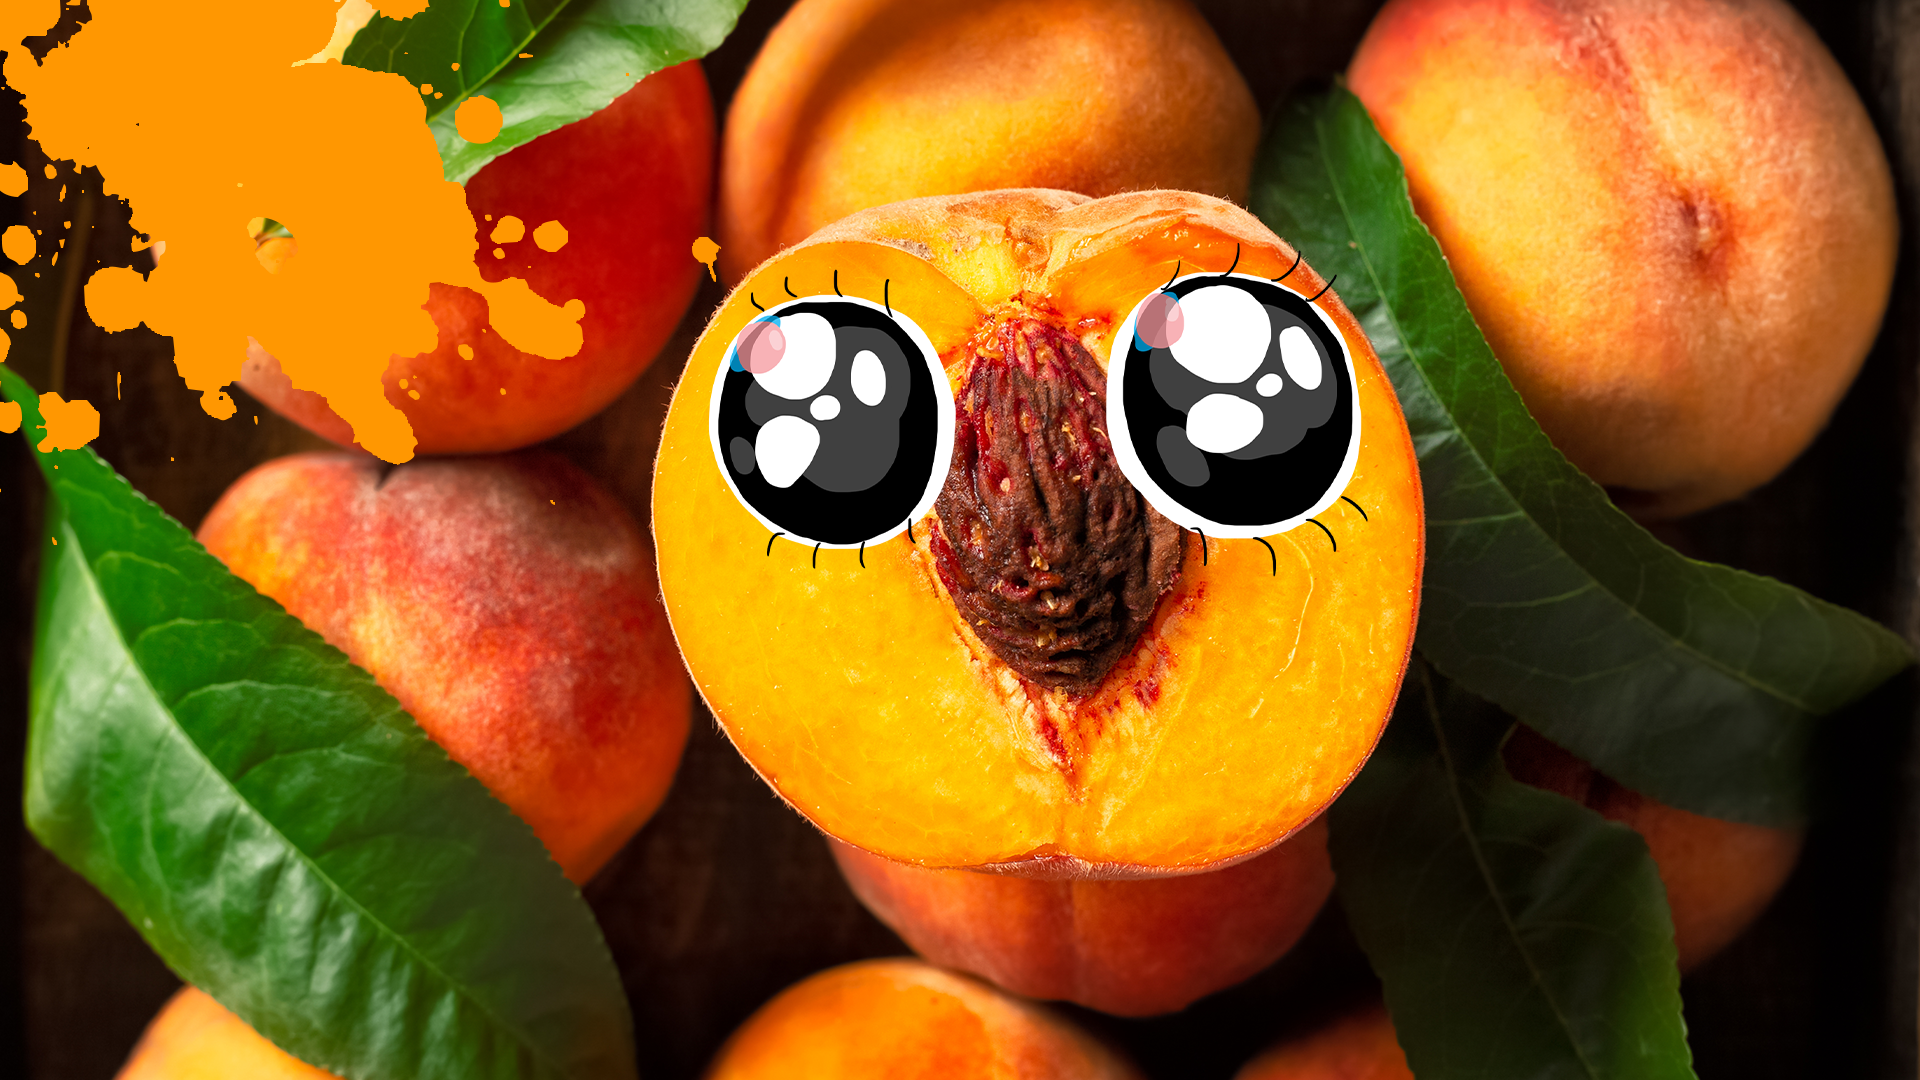 Peach with pretty eyes